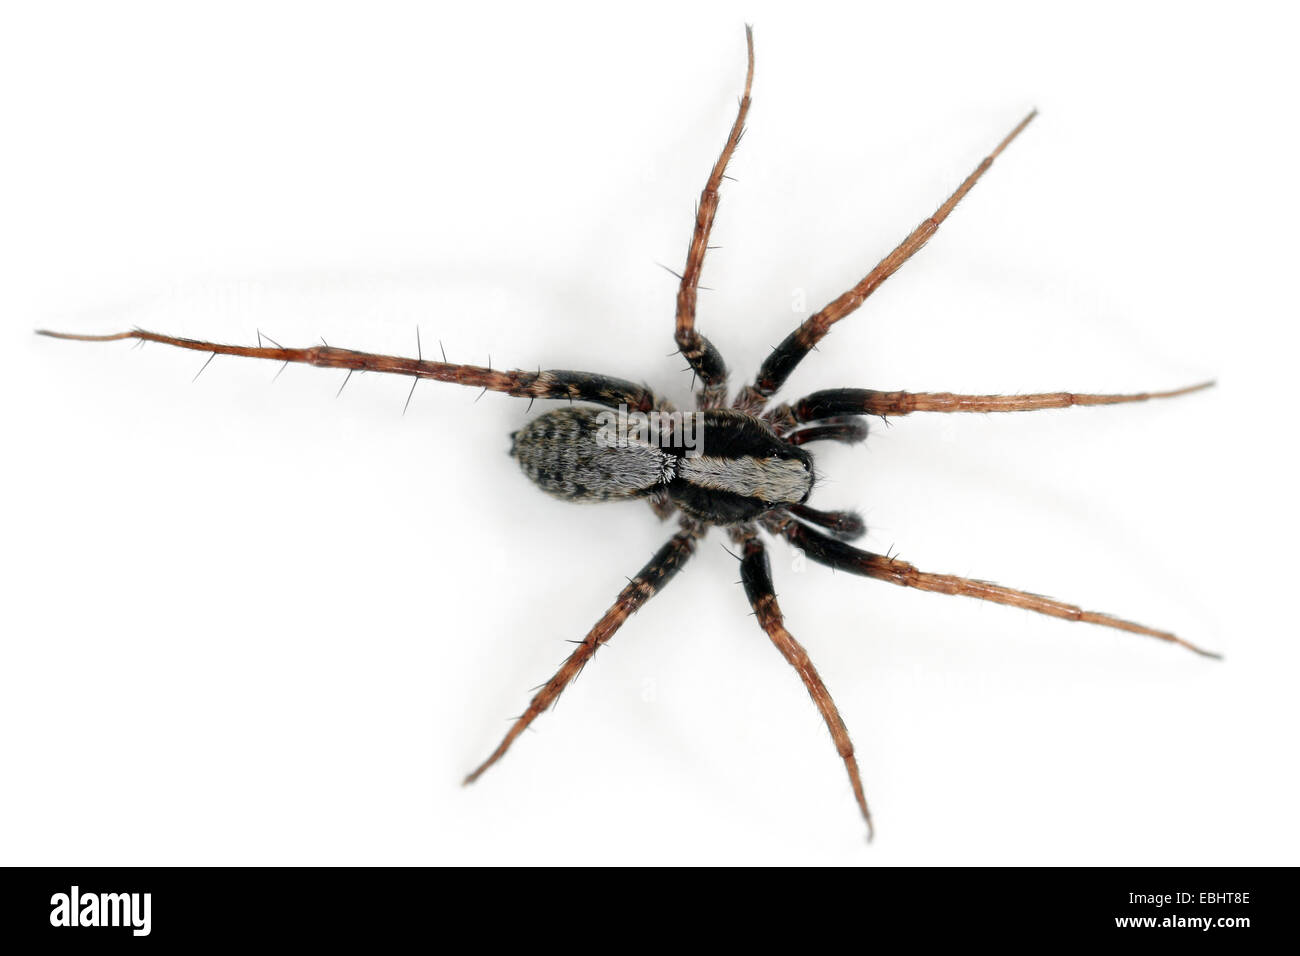 Voce maschile Pardosa lugubris spider su sfondo bianco. Famiglia Lycosidae, Lupo ragni. Si può vedere che questo ragno ha una gamba mancante. Foto Stock